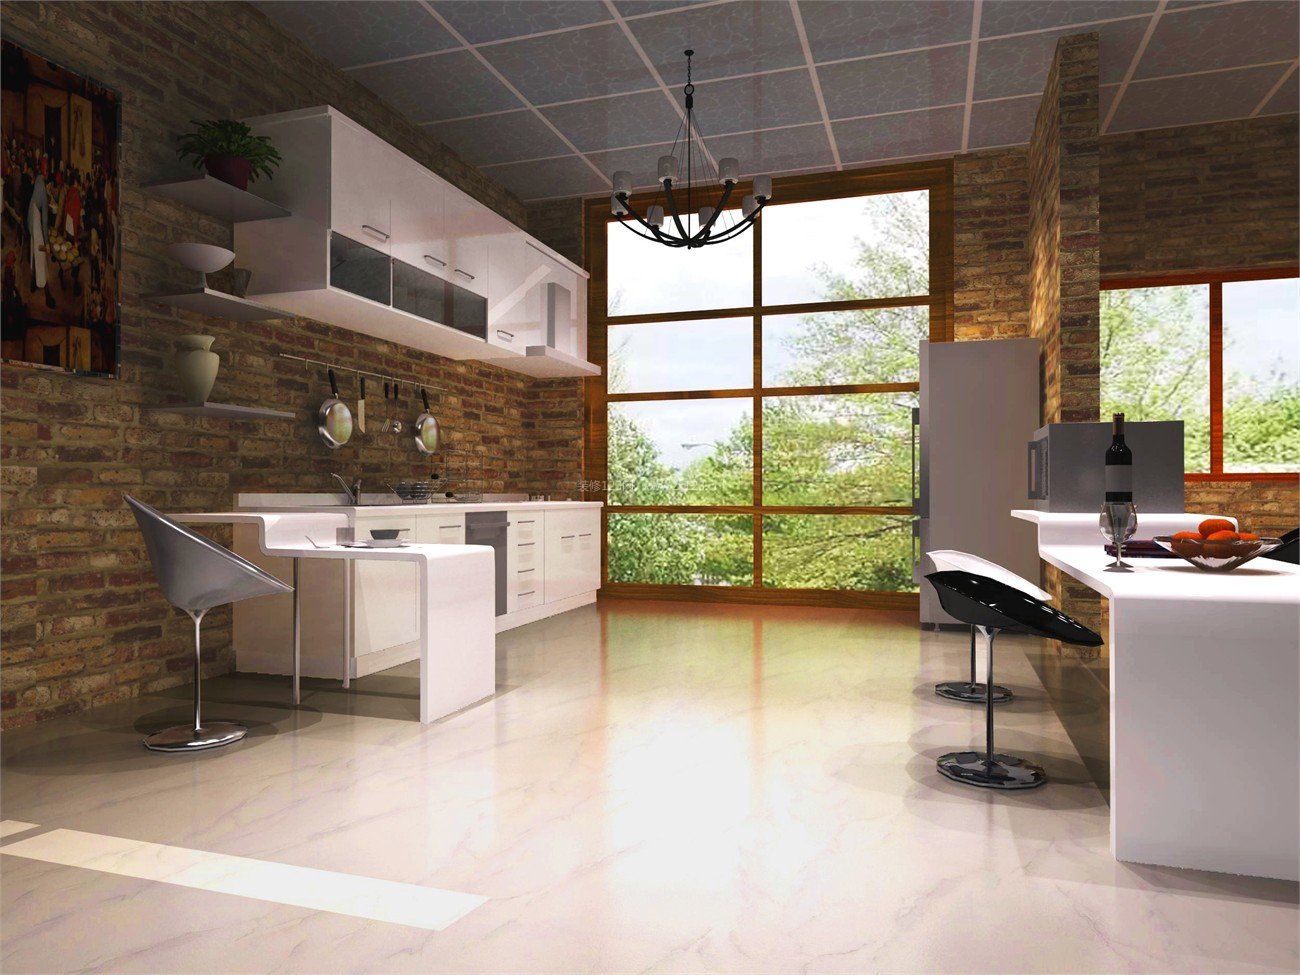 简约现代风格厨房橱柜背景墙装修效果图